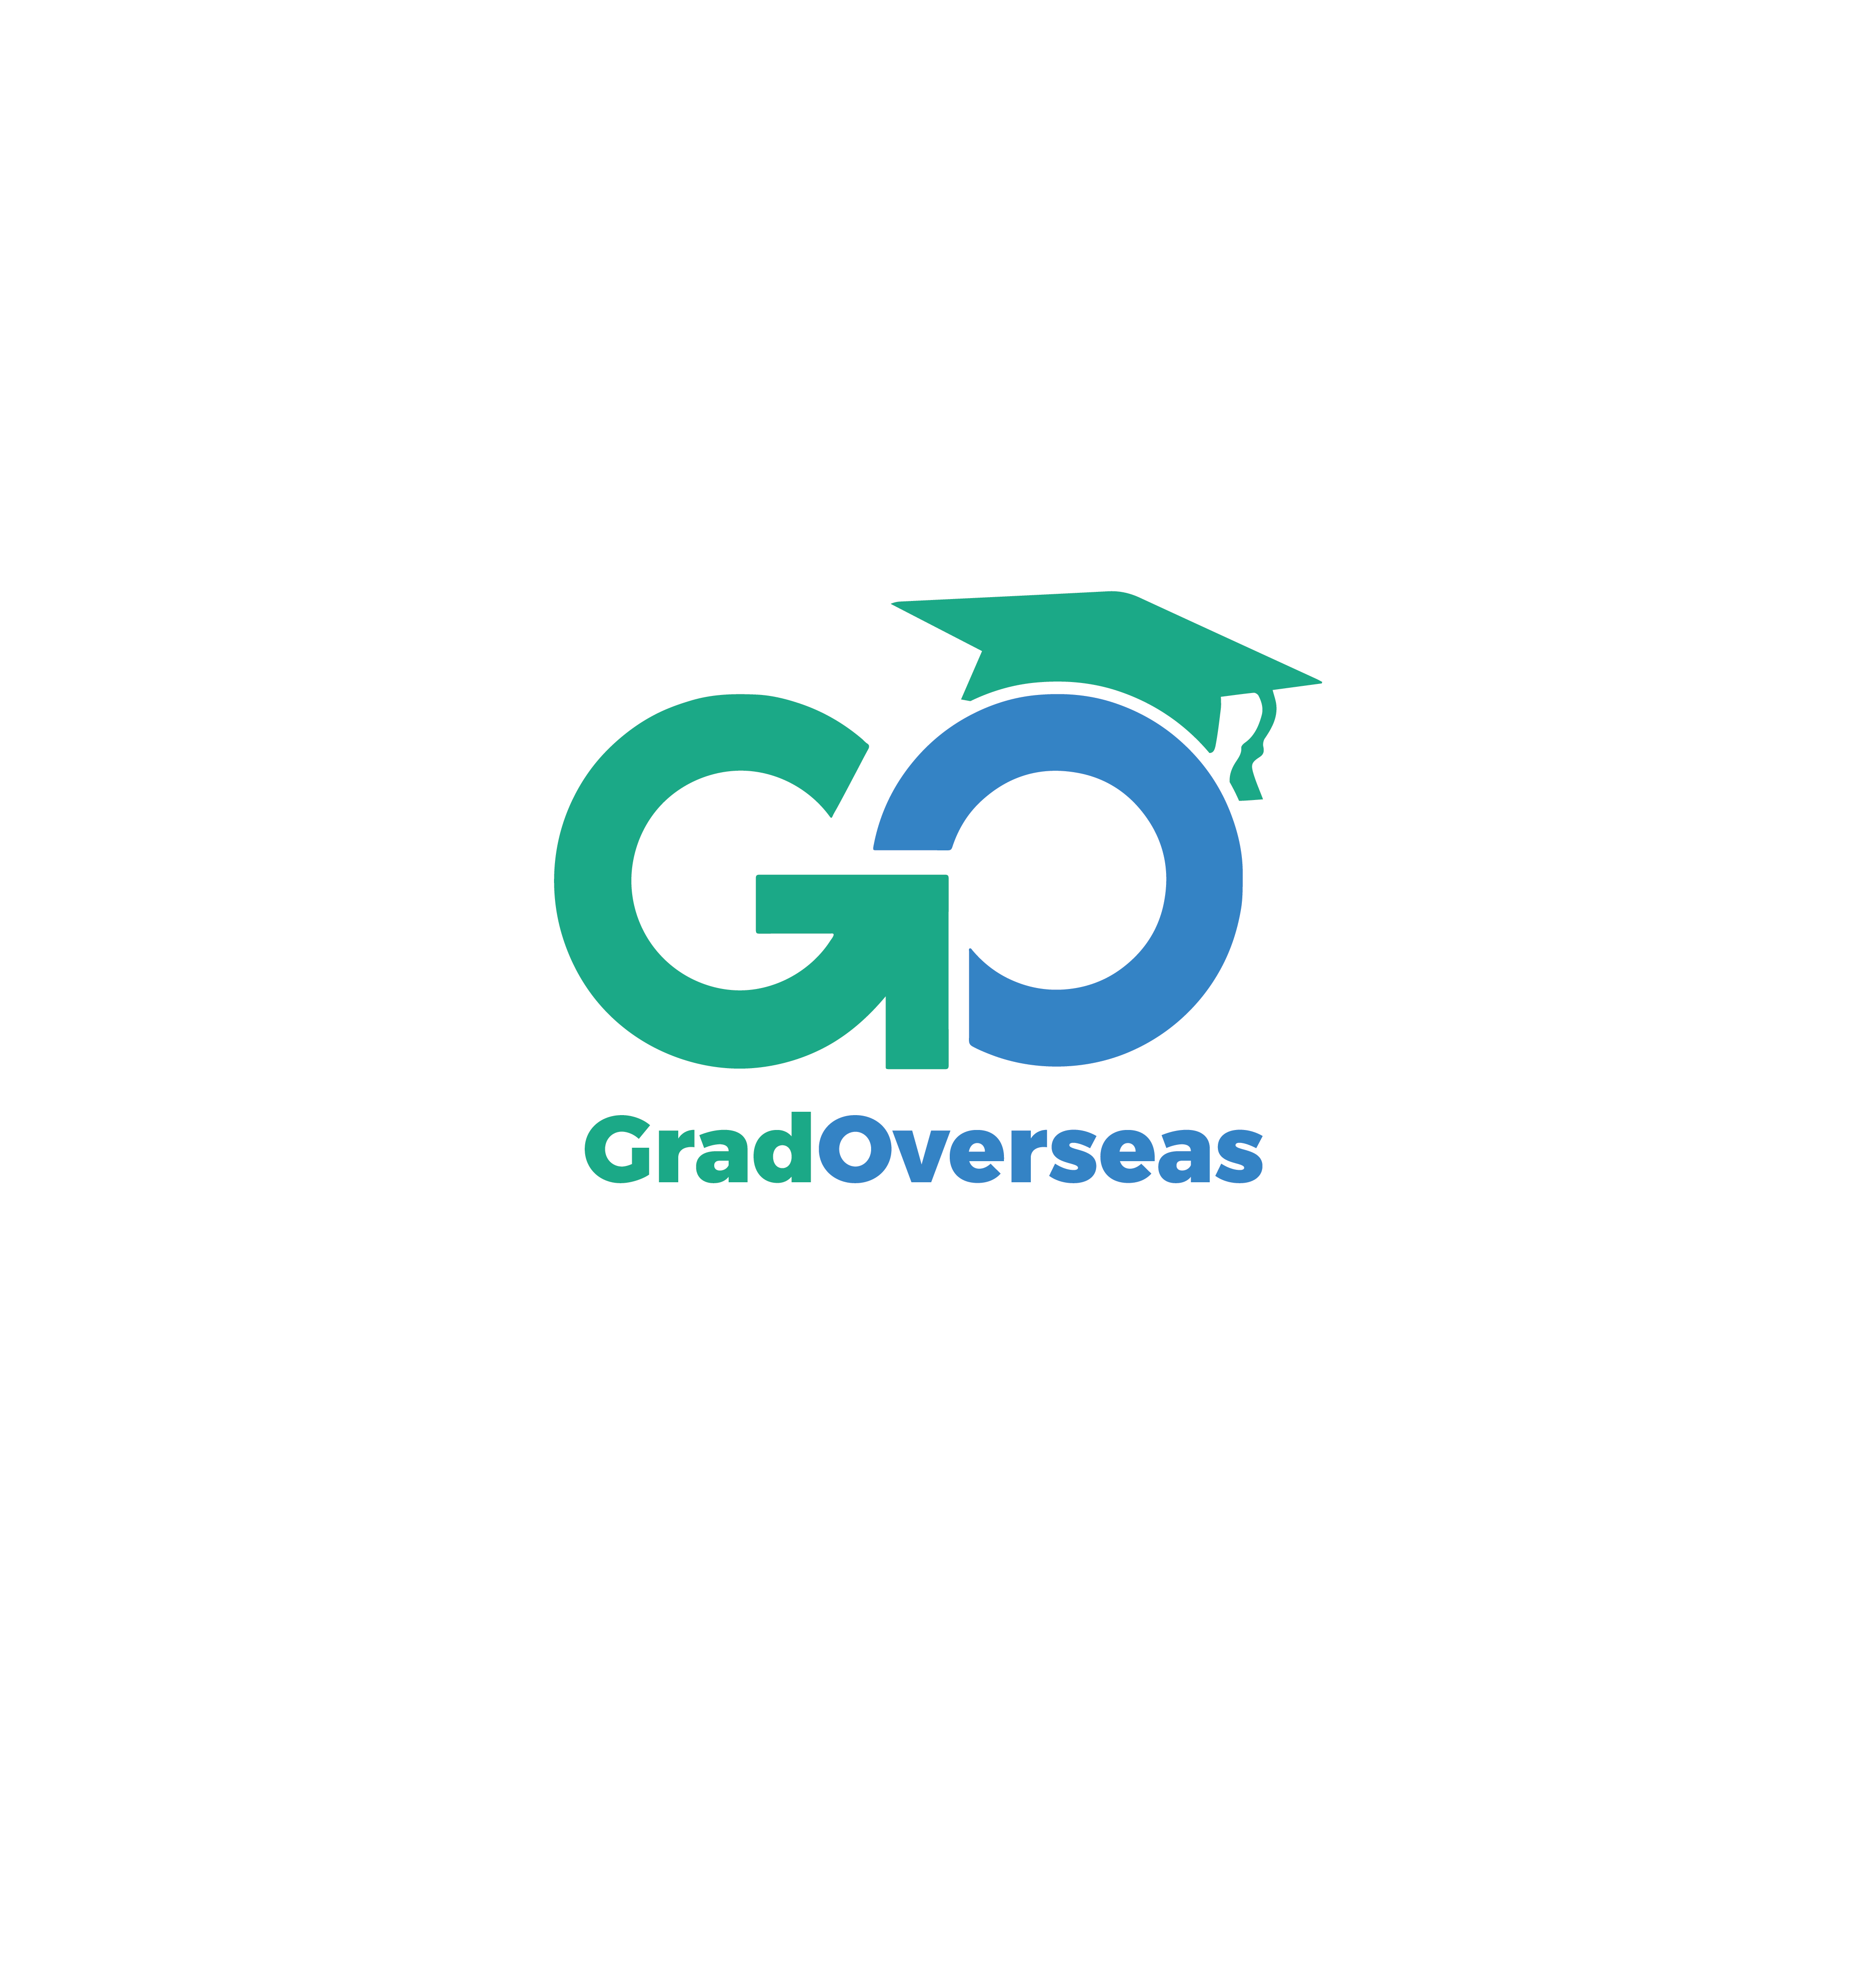 GRADOVERSEAS EDUCATION SERVICES LTD